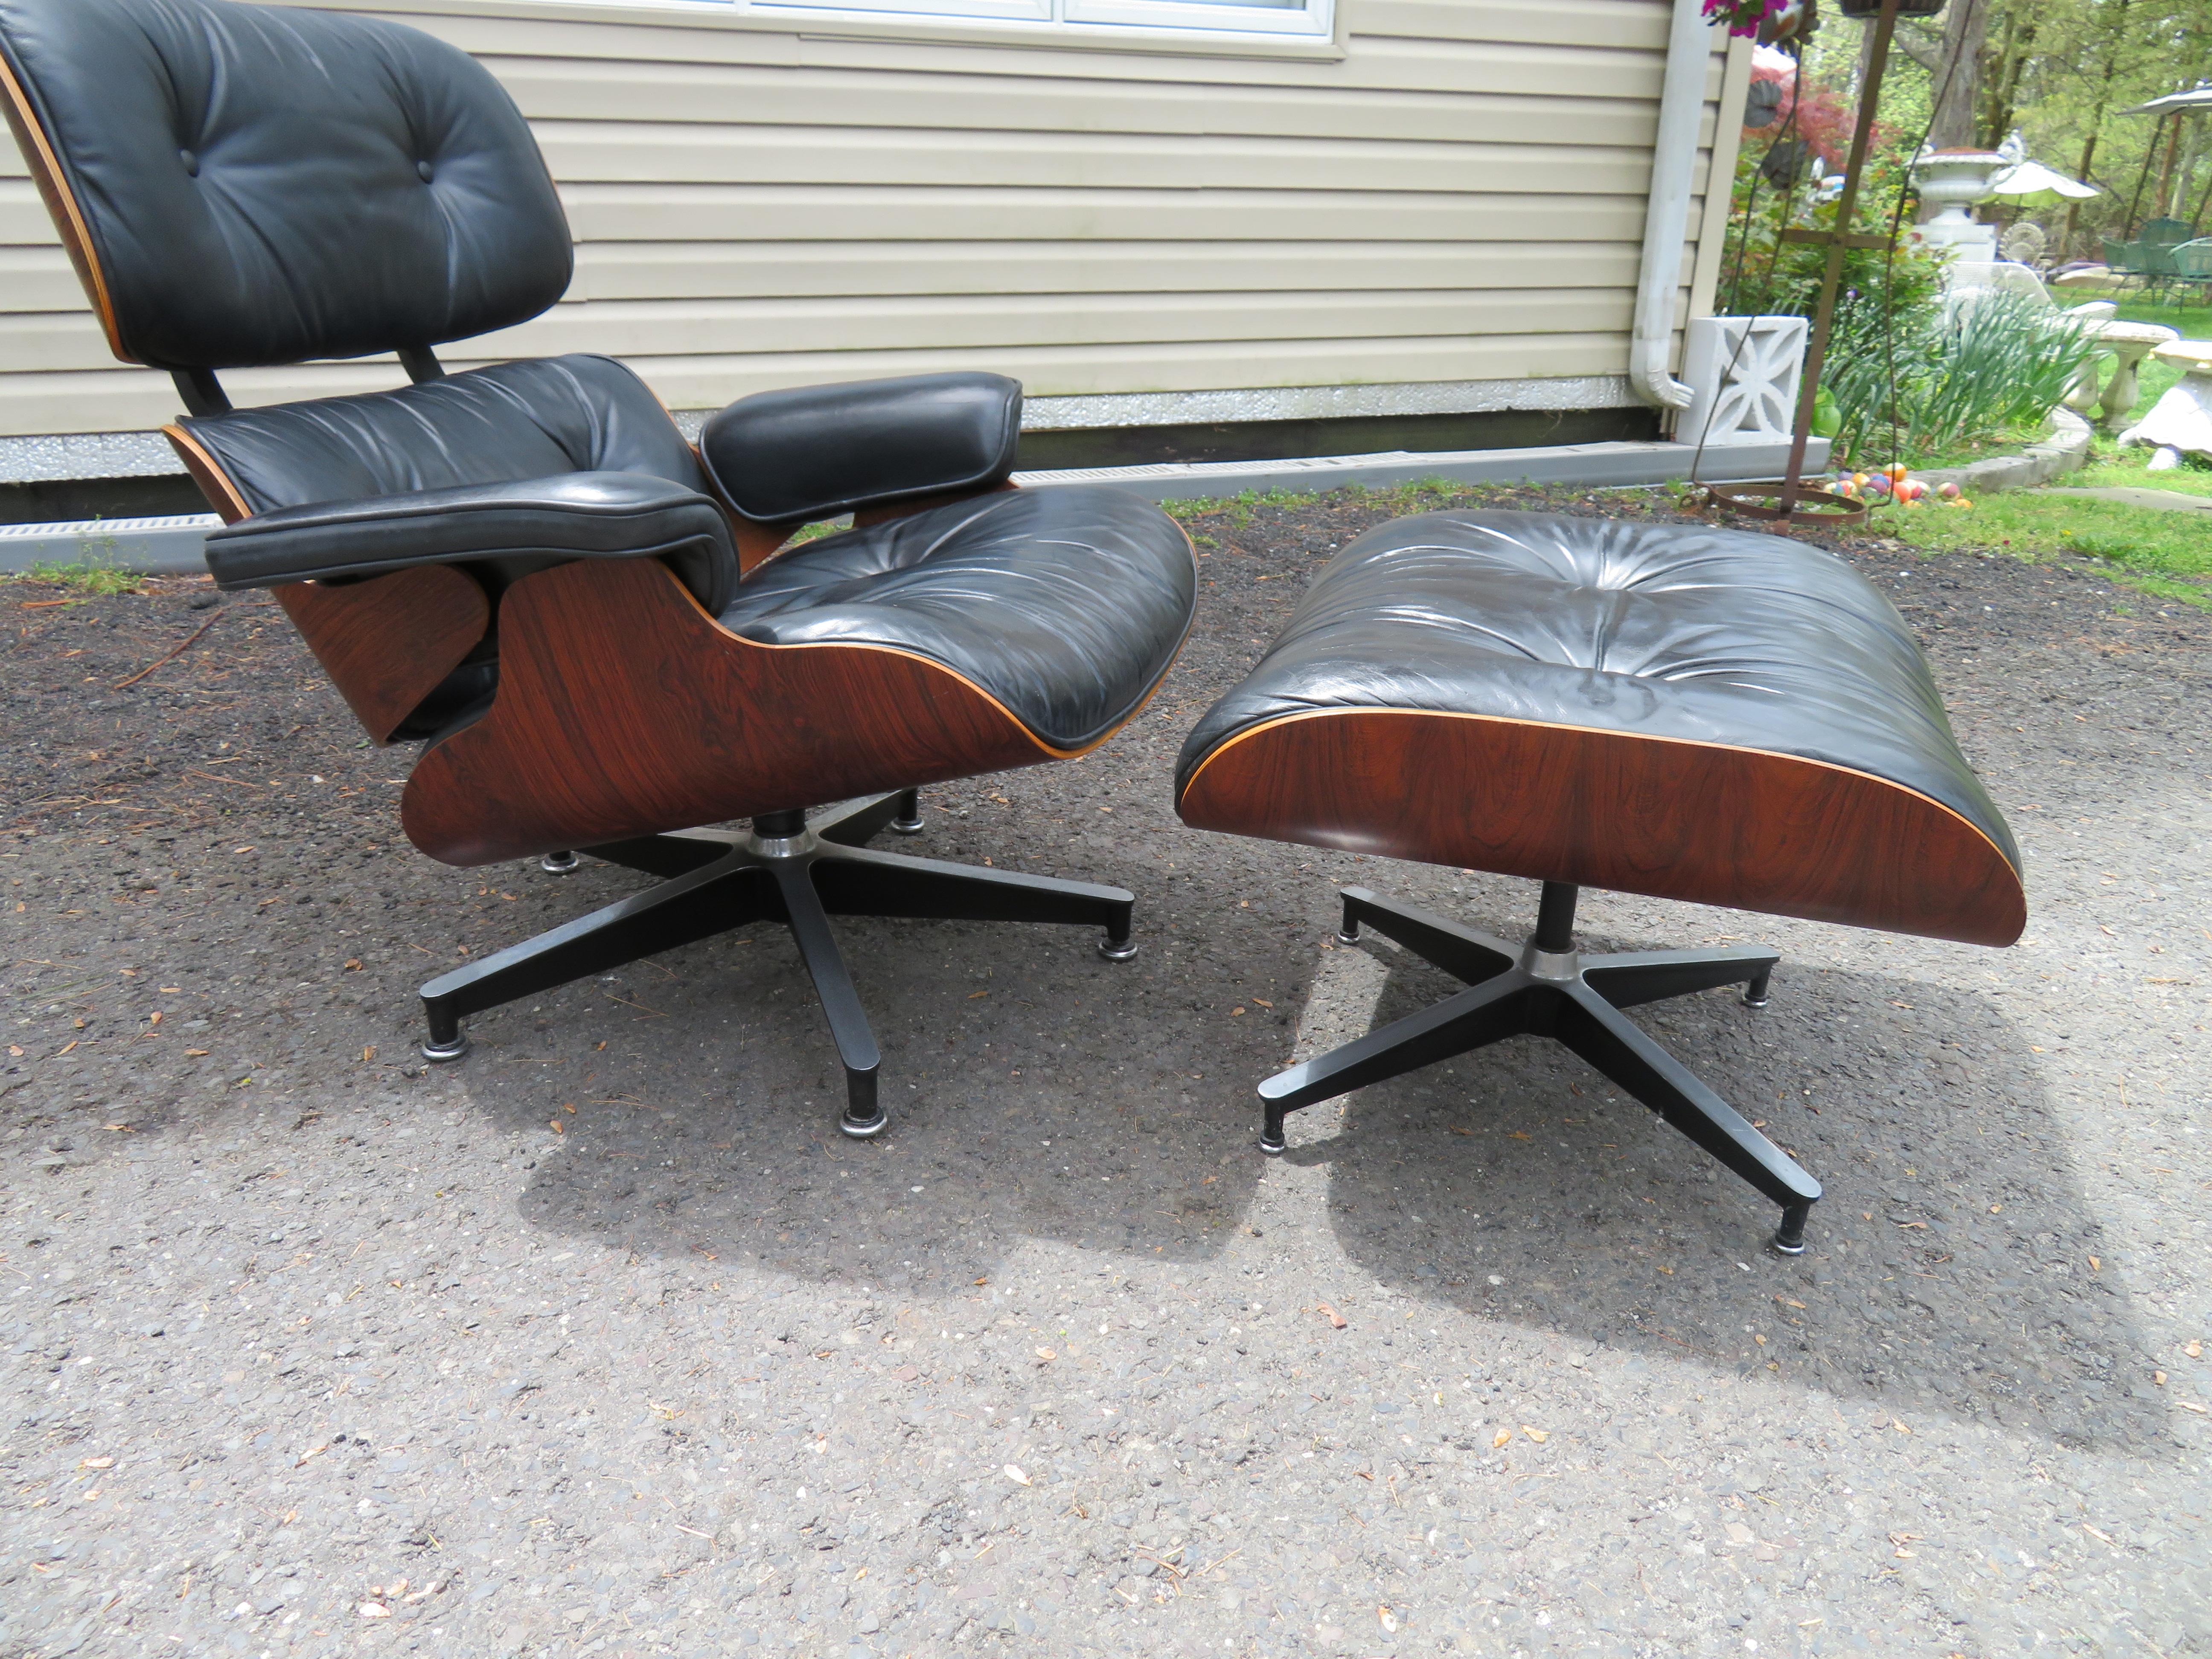 Un exemple très propre d'une icône moderne vintage. Charles Eames 670 & 671 Chaise longue et ottoman produits par Herman Miller. Magnifiques stries dans le veinage du palissandre brésilien. Un bel exemple et oui, ils sont aussi confortables qu'ils